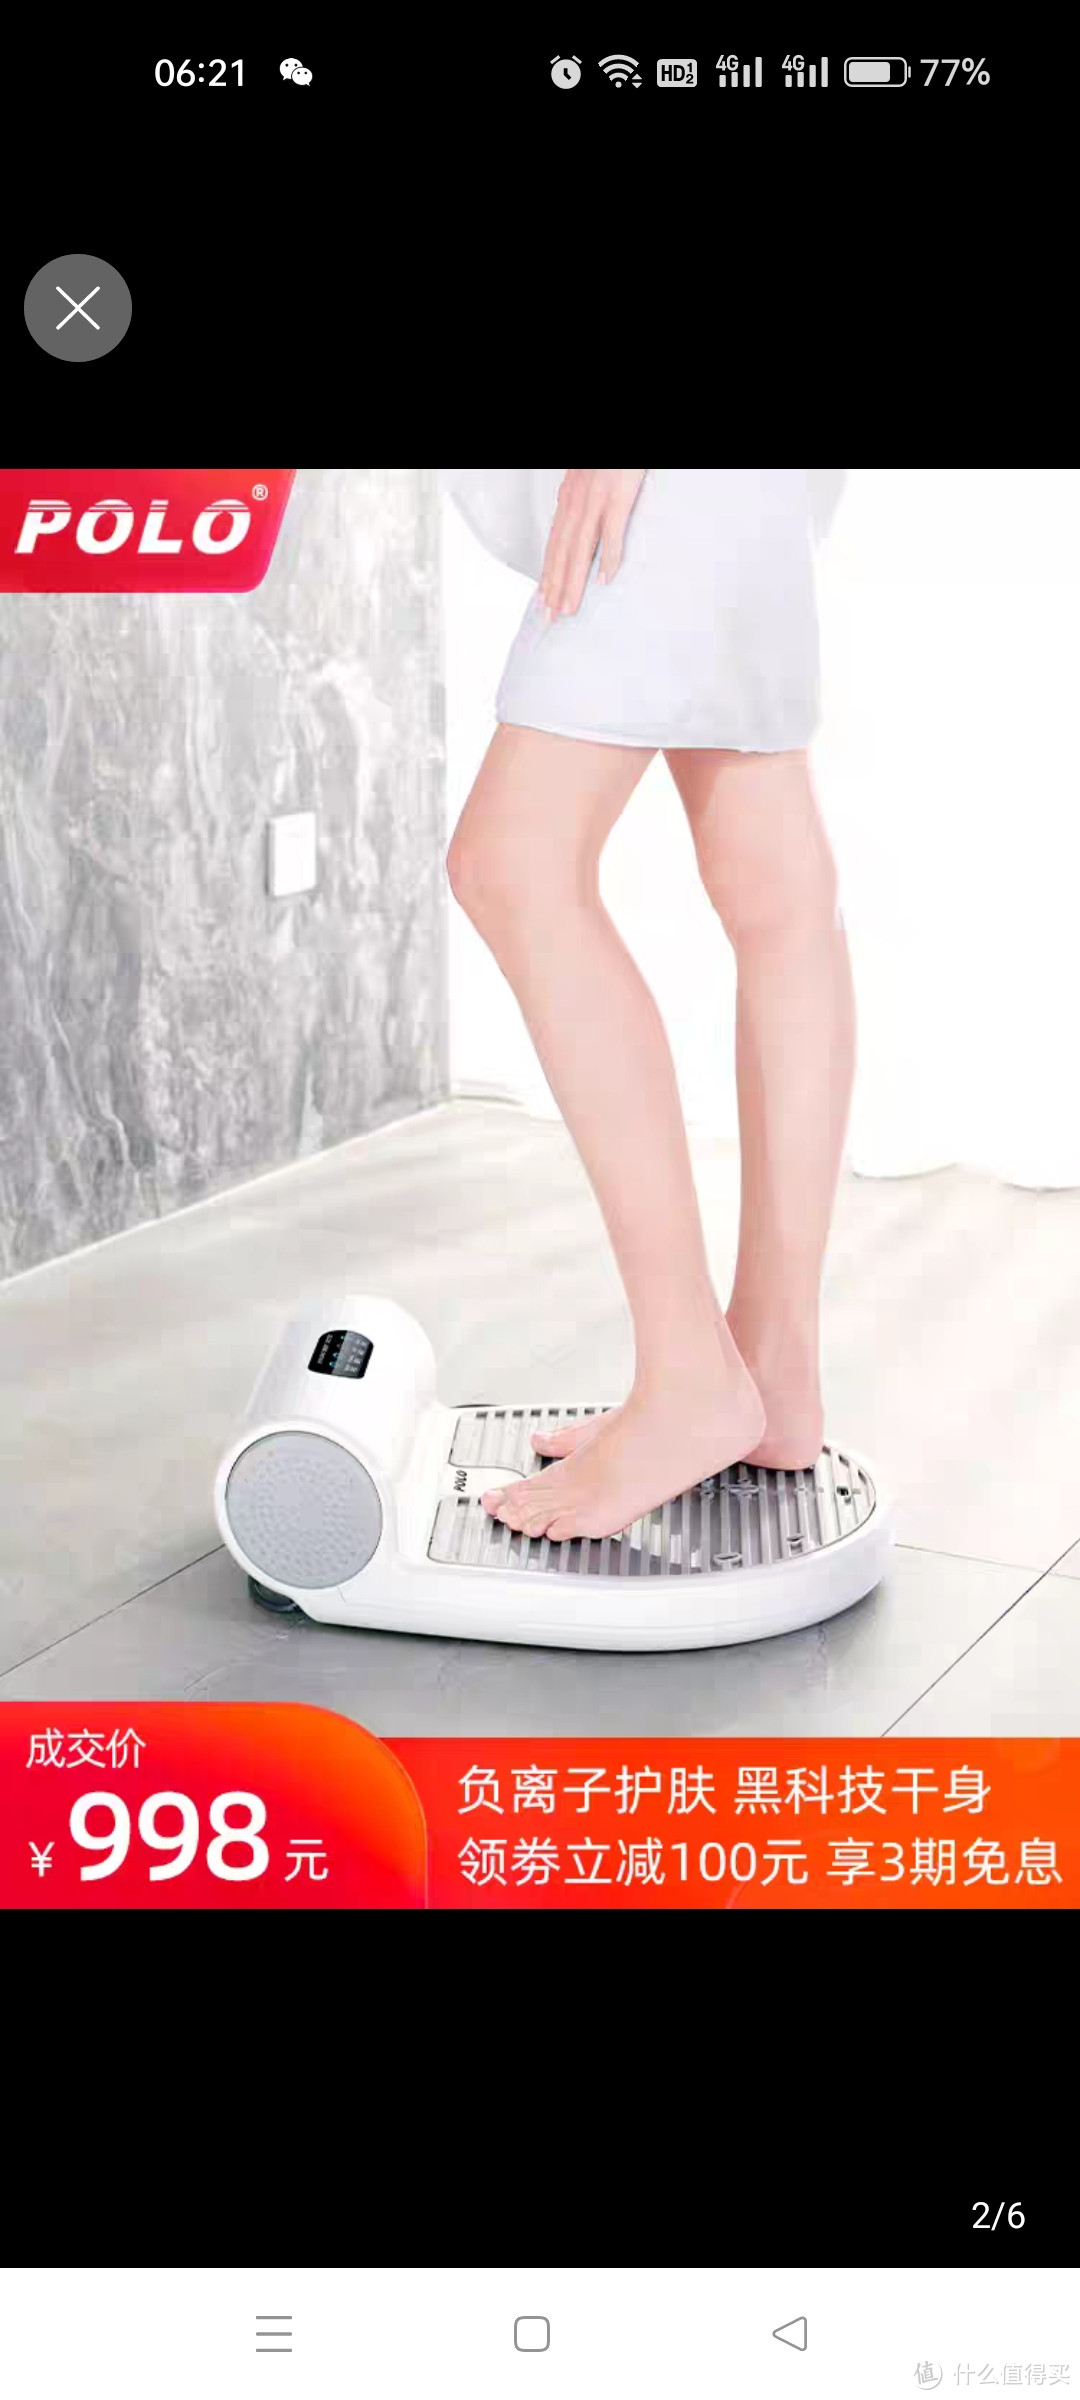 万物皆可测 POLO人体干身机家用洗澡浴室干身器电吹风机负离子干肤身体烘干机